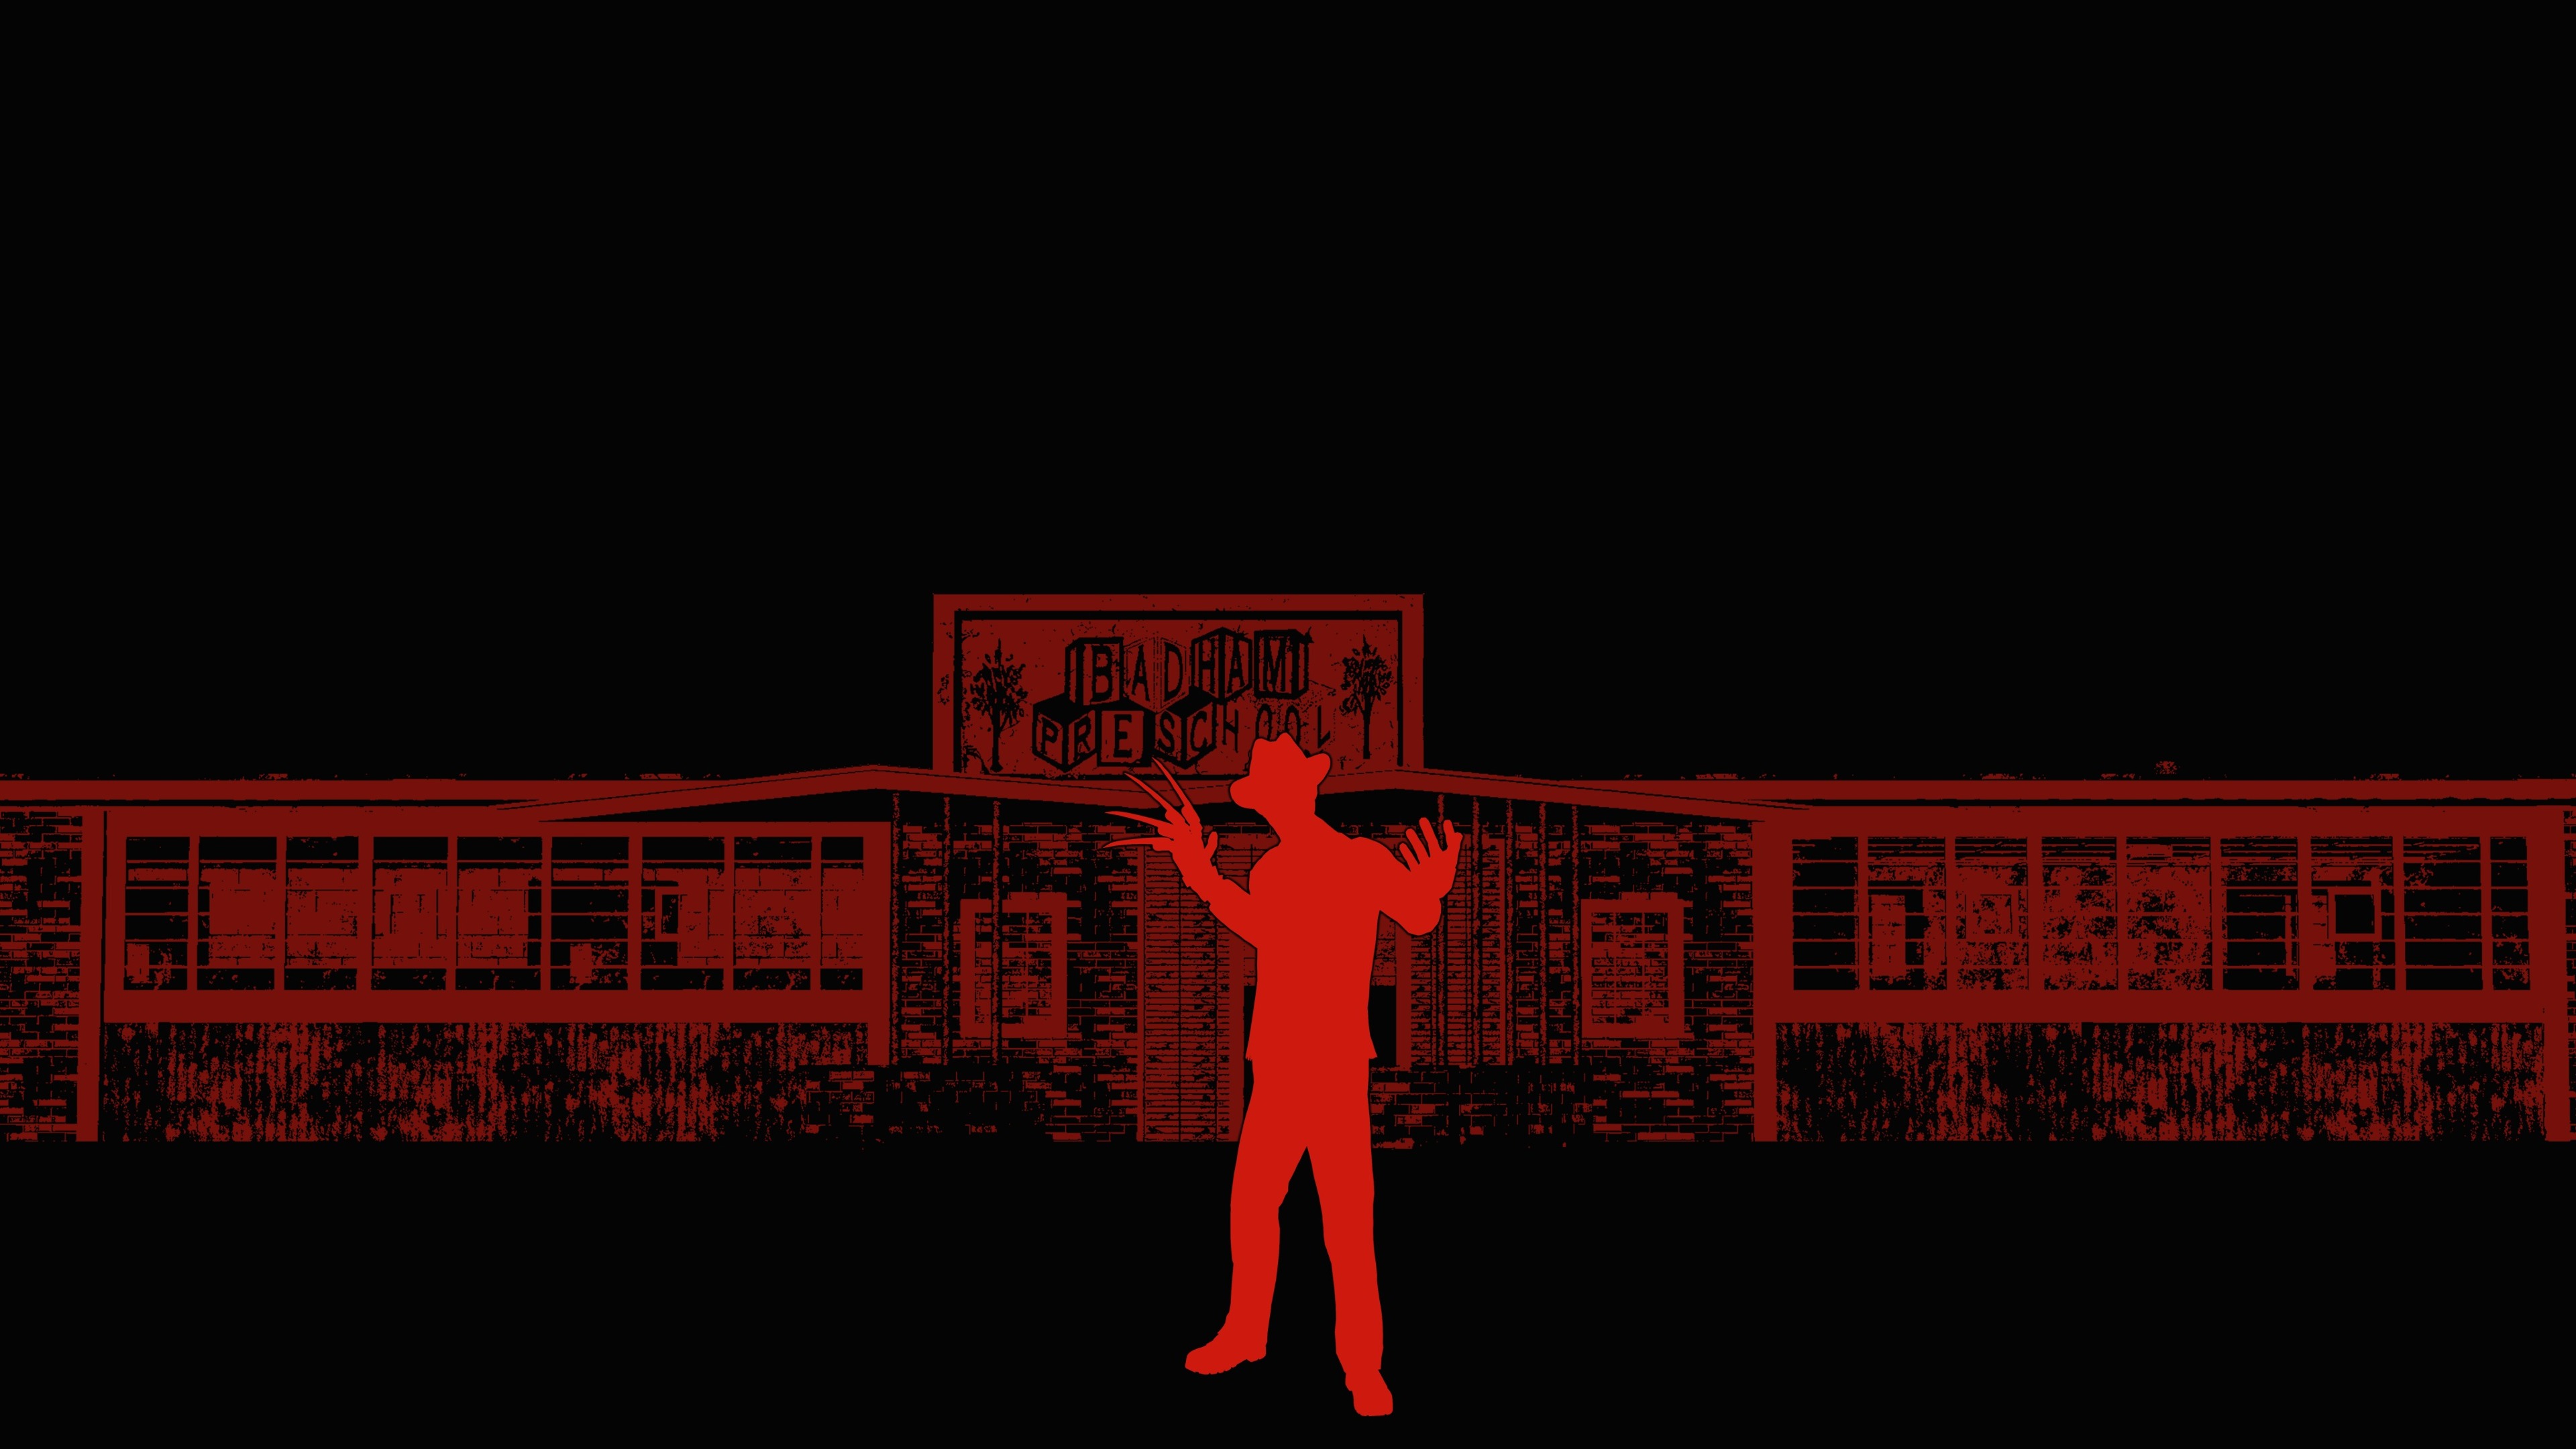 Freddy Krueger Minimal Dead By Daylight Game Art Wallpapers